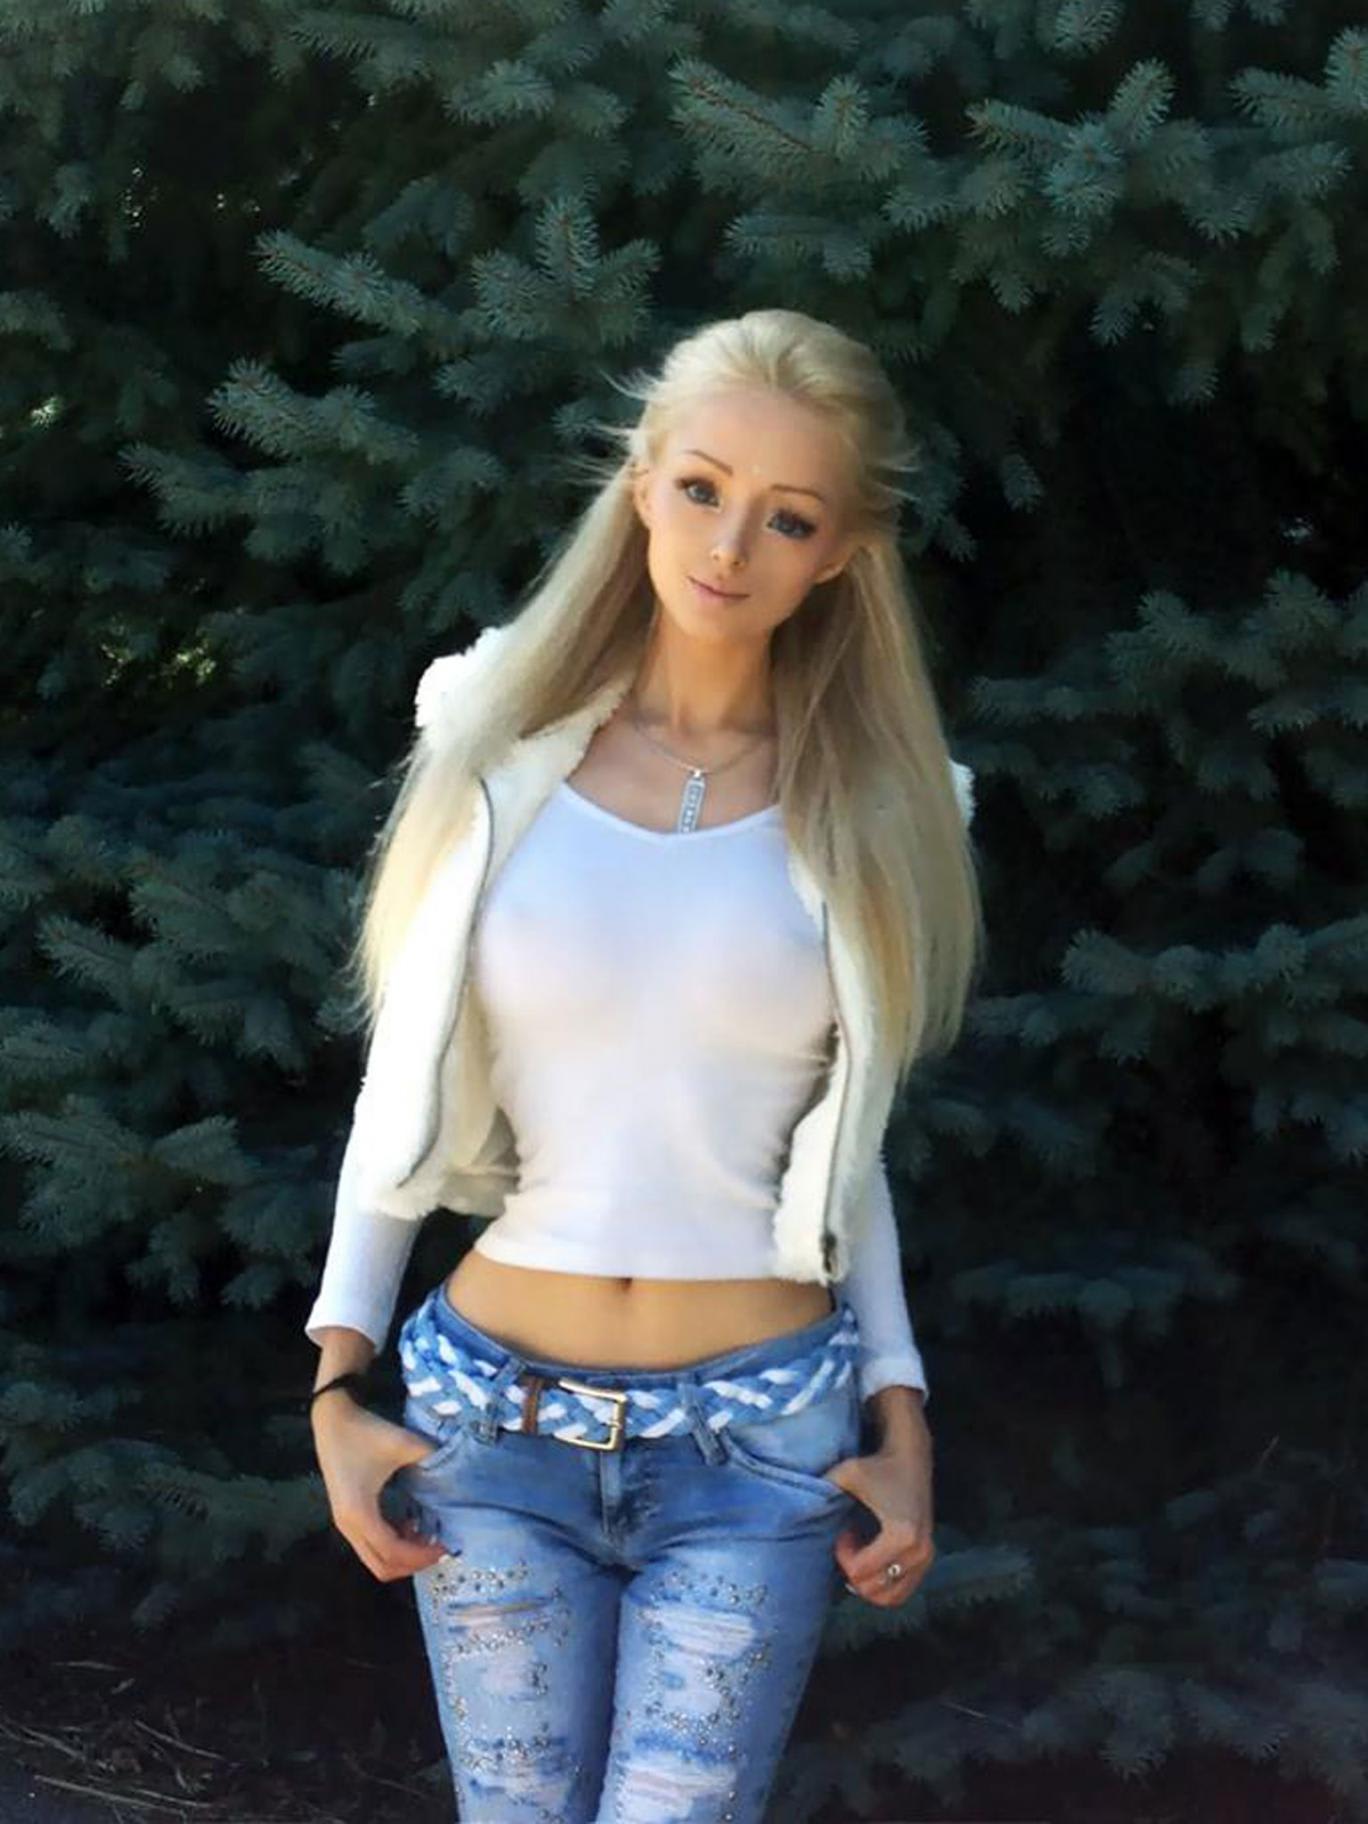 ウクライナの「人間バービー(Human Barbie)」は、空気と光で生活したい。 - 世界メディア・ニュースとモバイル・マネー